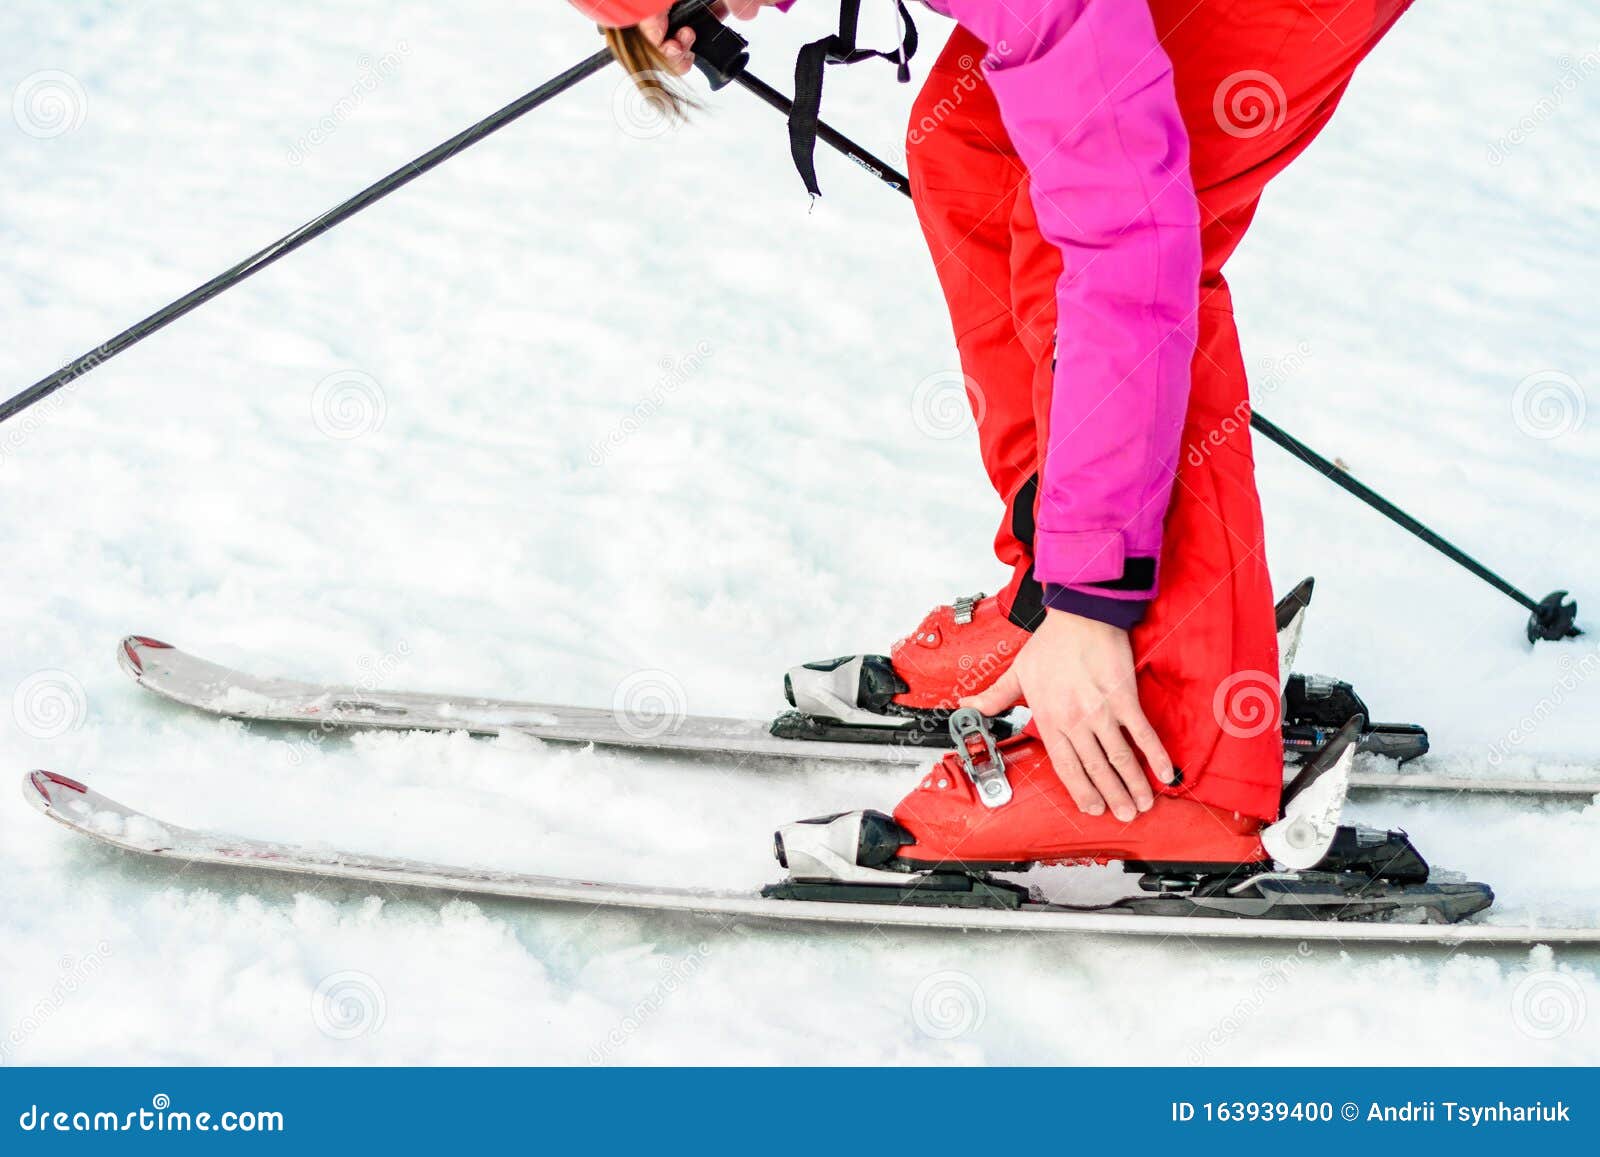 Skier Rood Skipak En Rode En Witte Ski's, Closeup Stock Foto - Image aardig: 163939400